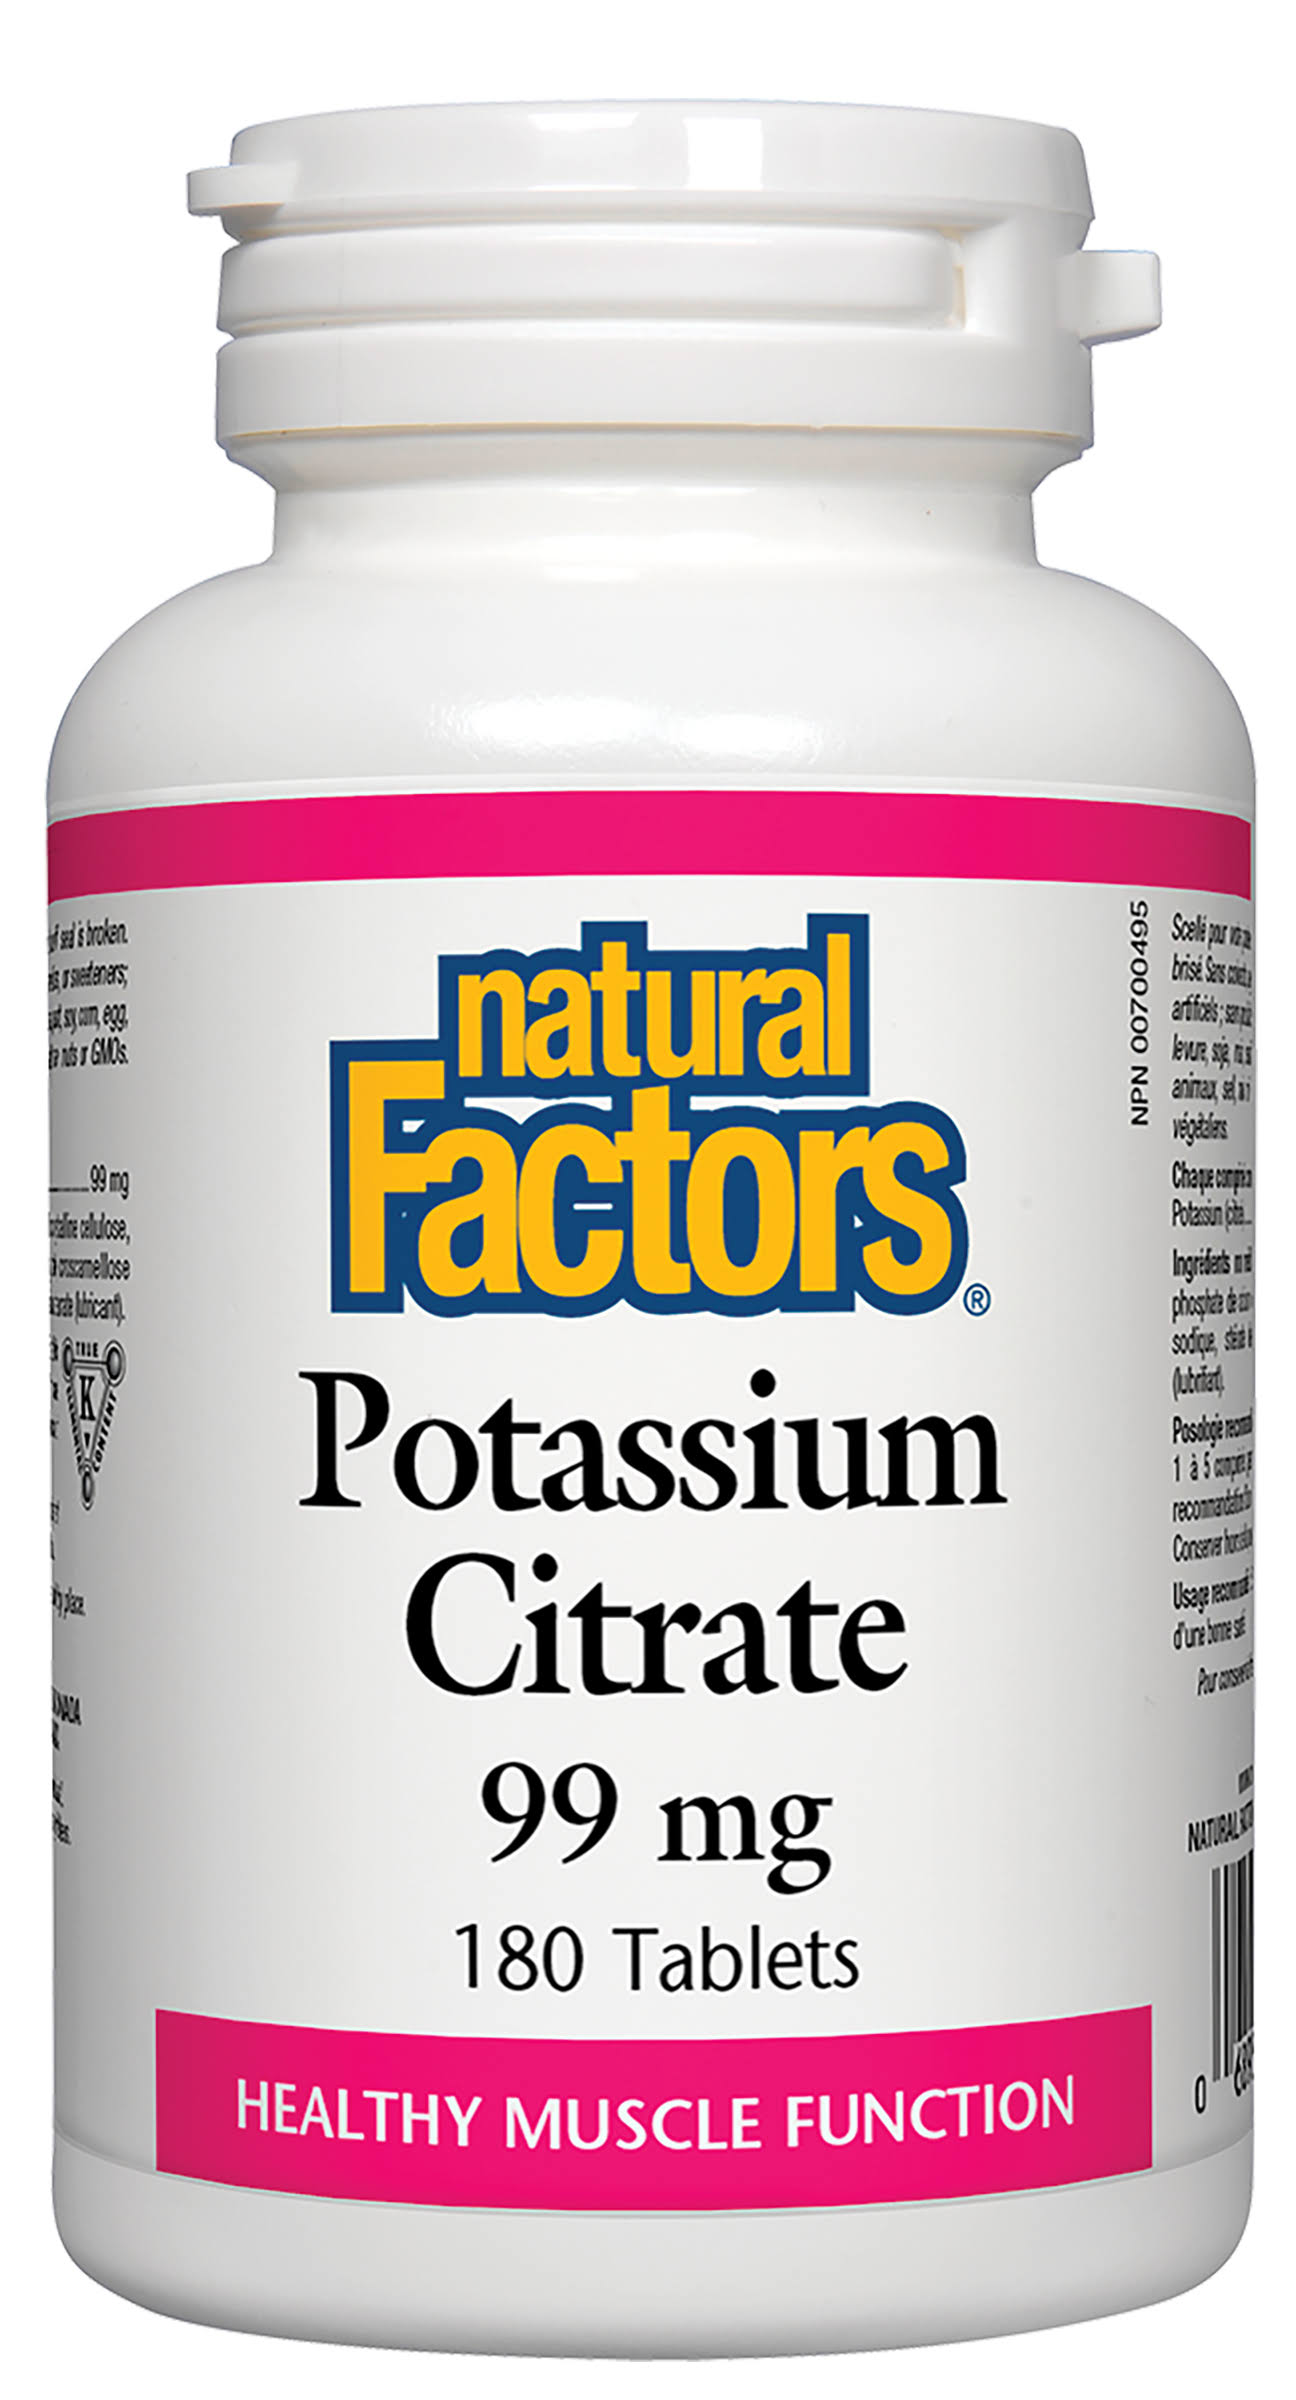 Natural Factors Potassium Citrate Supplement - 99mg, 180ct